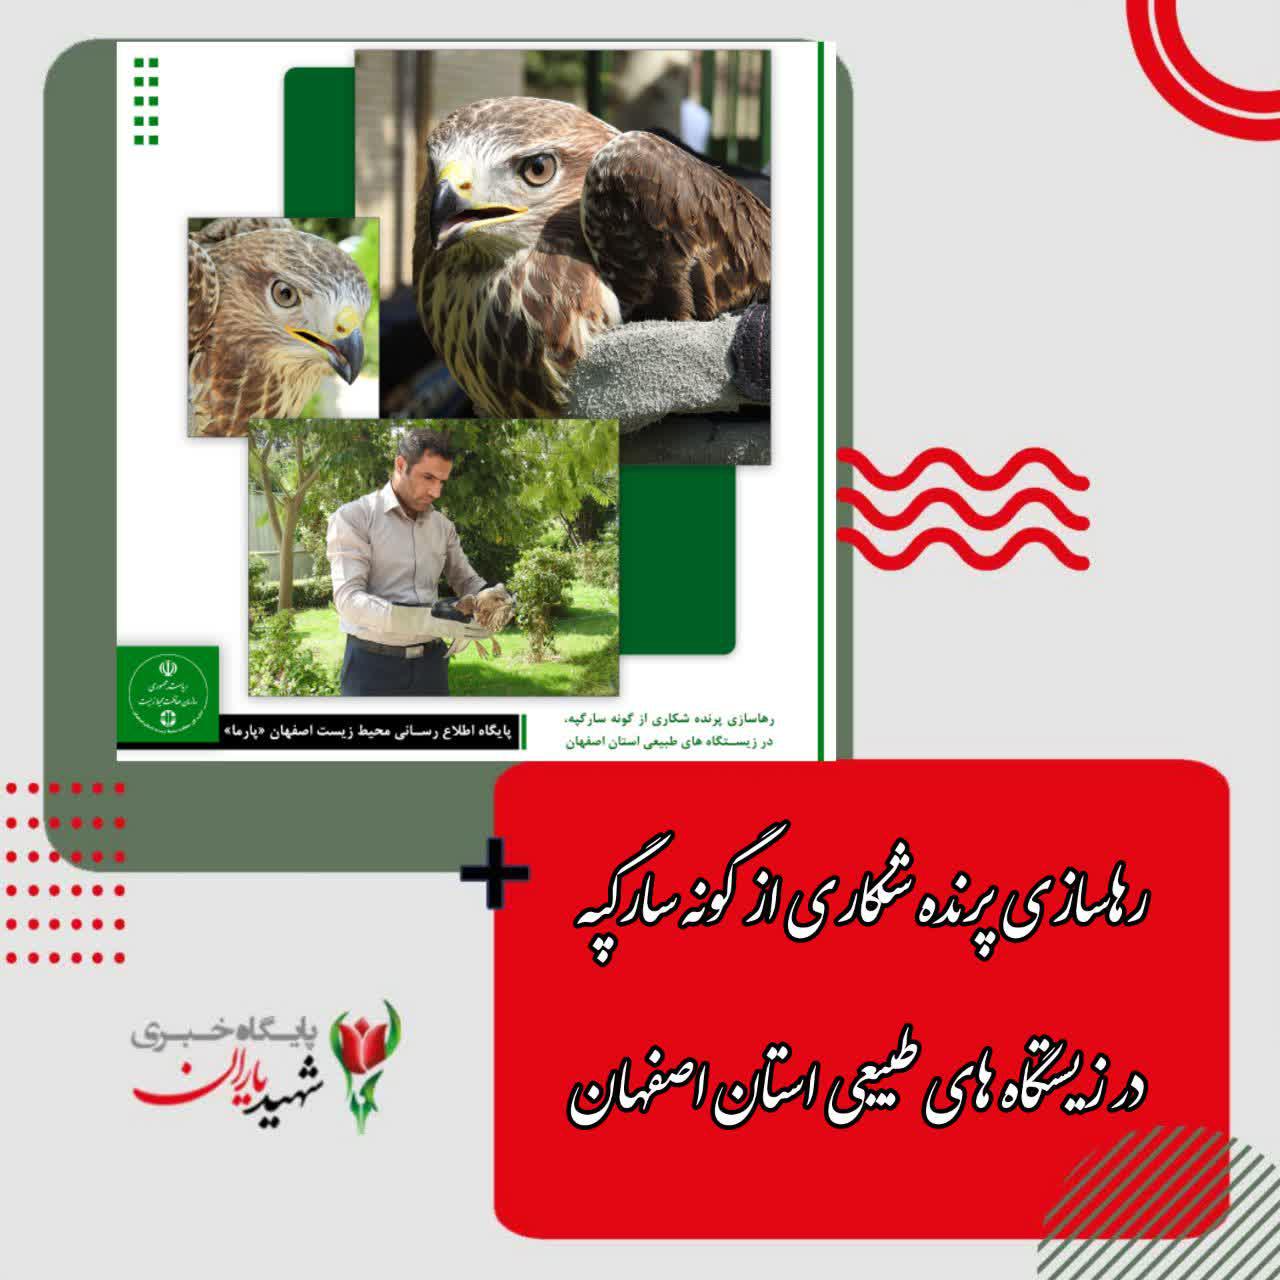 رهاسازی پرنده شکاری از گونه سارگپه در زیستگاه های طبیعی استان اصفهان